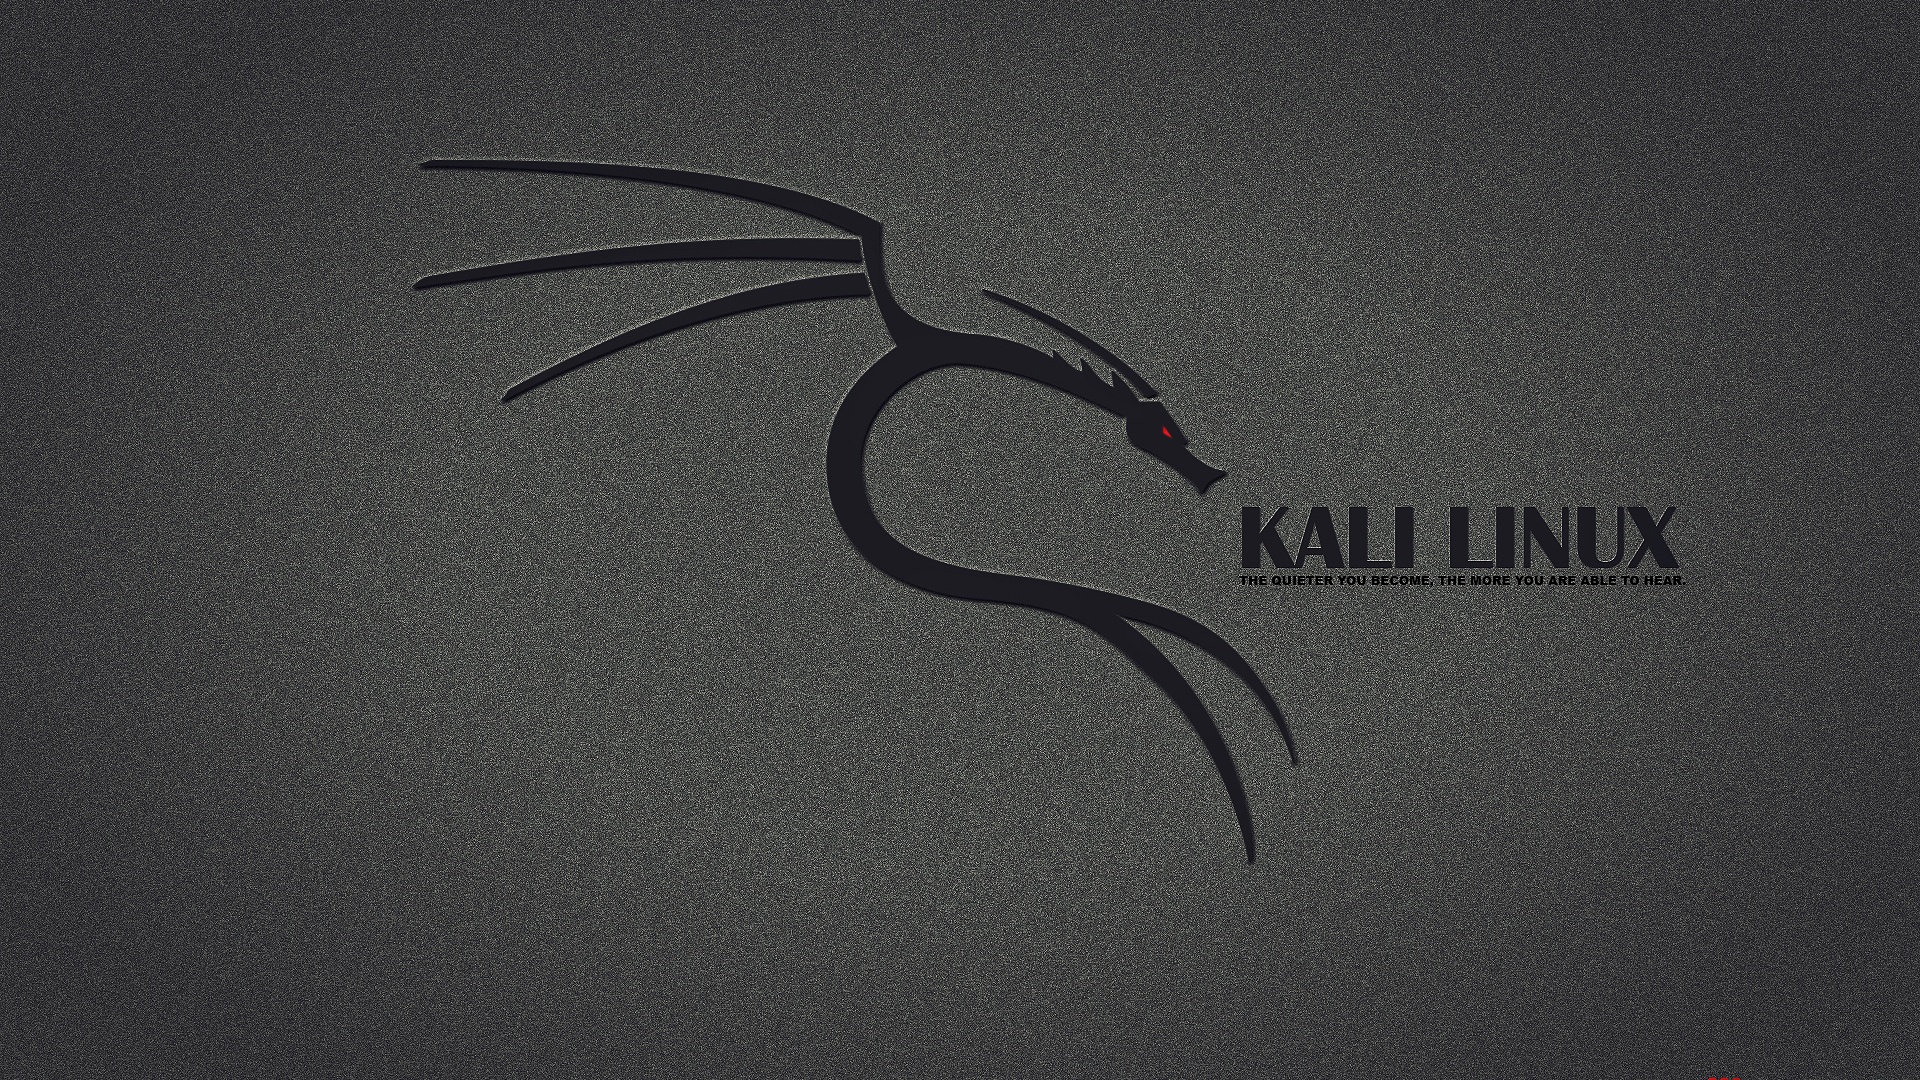 Kali Linux Desktop Pc And Mac Wallpaper